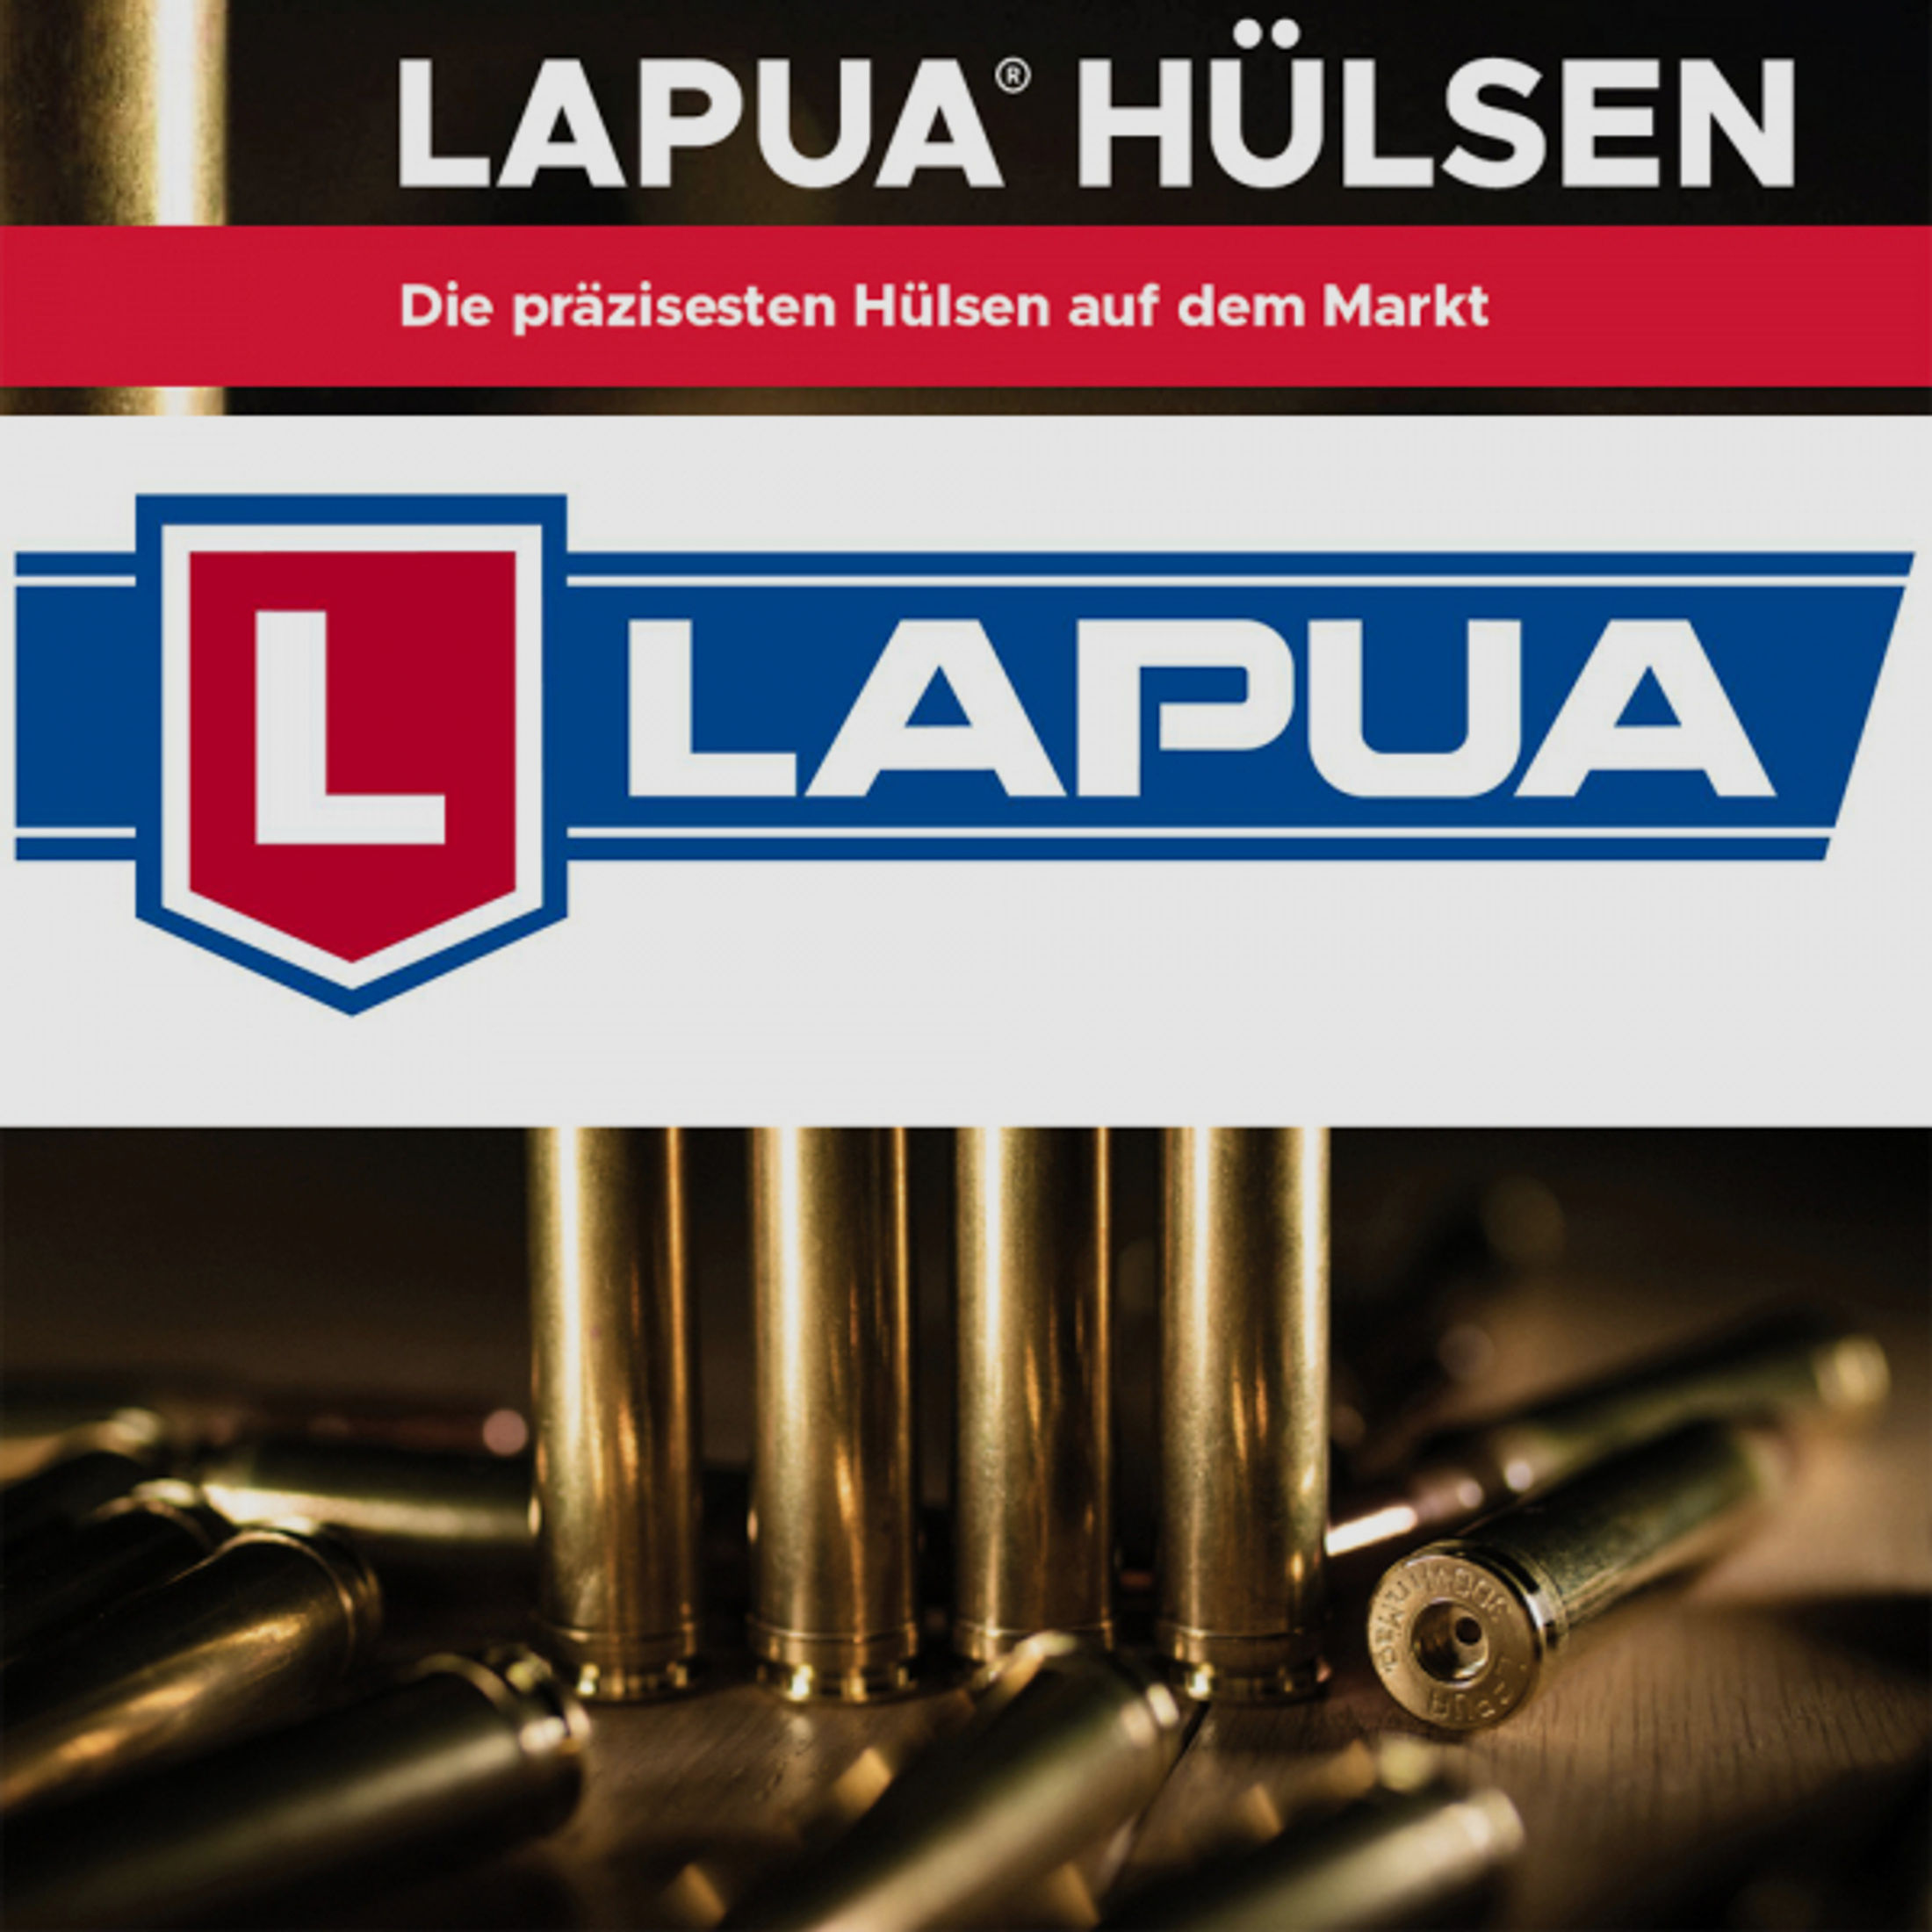 100 Stück NEUE LAPUA CASES | Wiederlade Hülsen | 6,5x55SE 6.5 x 55 SE Swedish Mauser BOXER #4PH6012